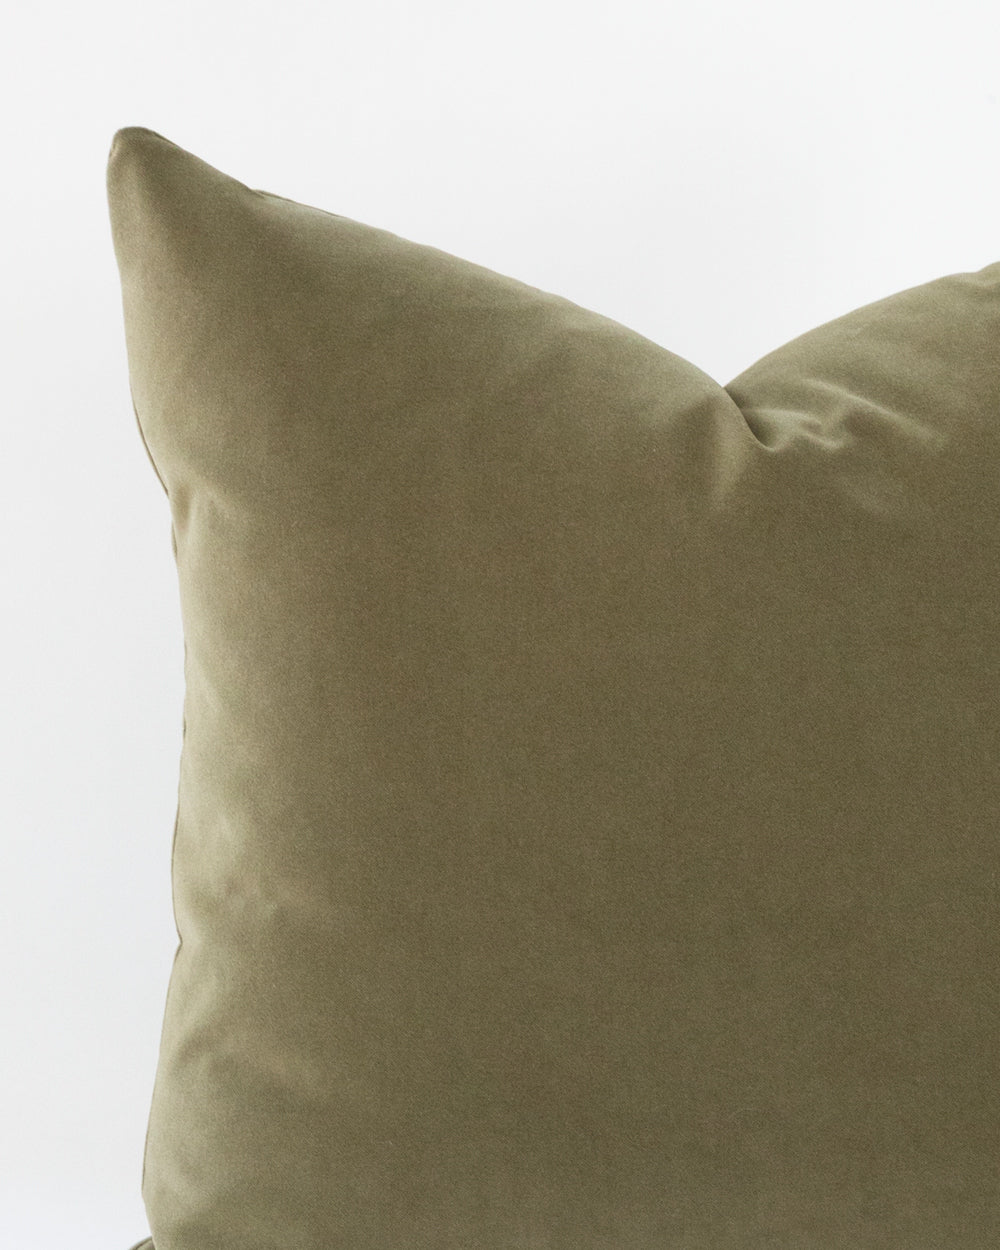 Close up detail of olive green velvet pillow